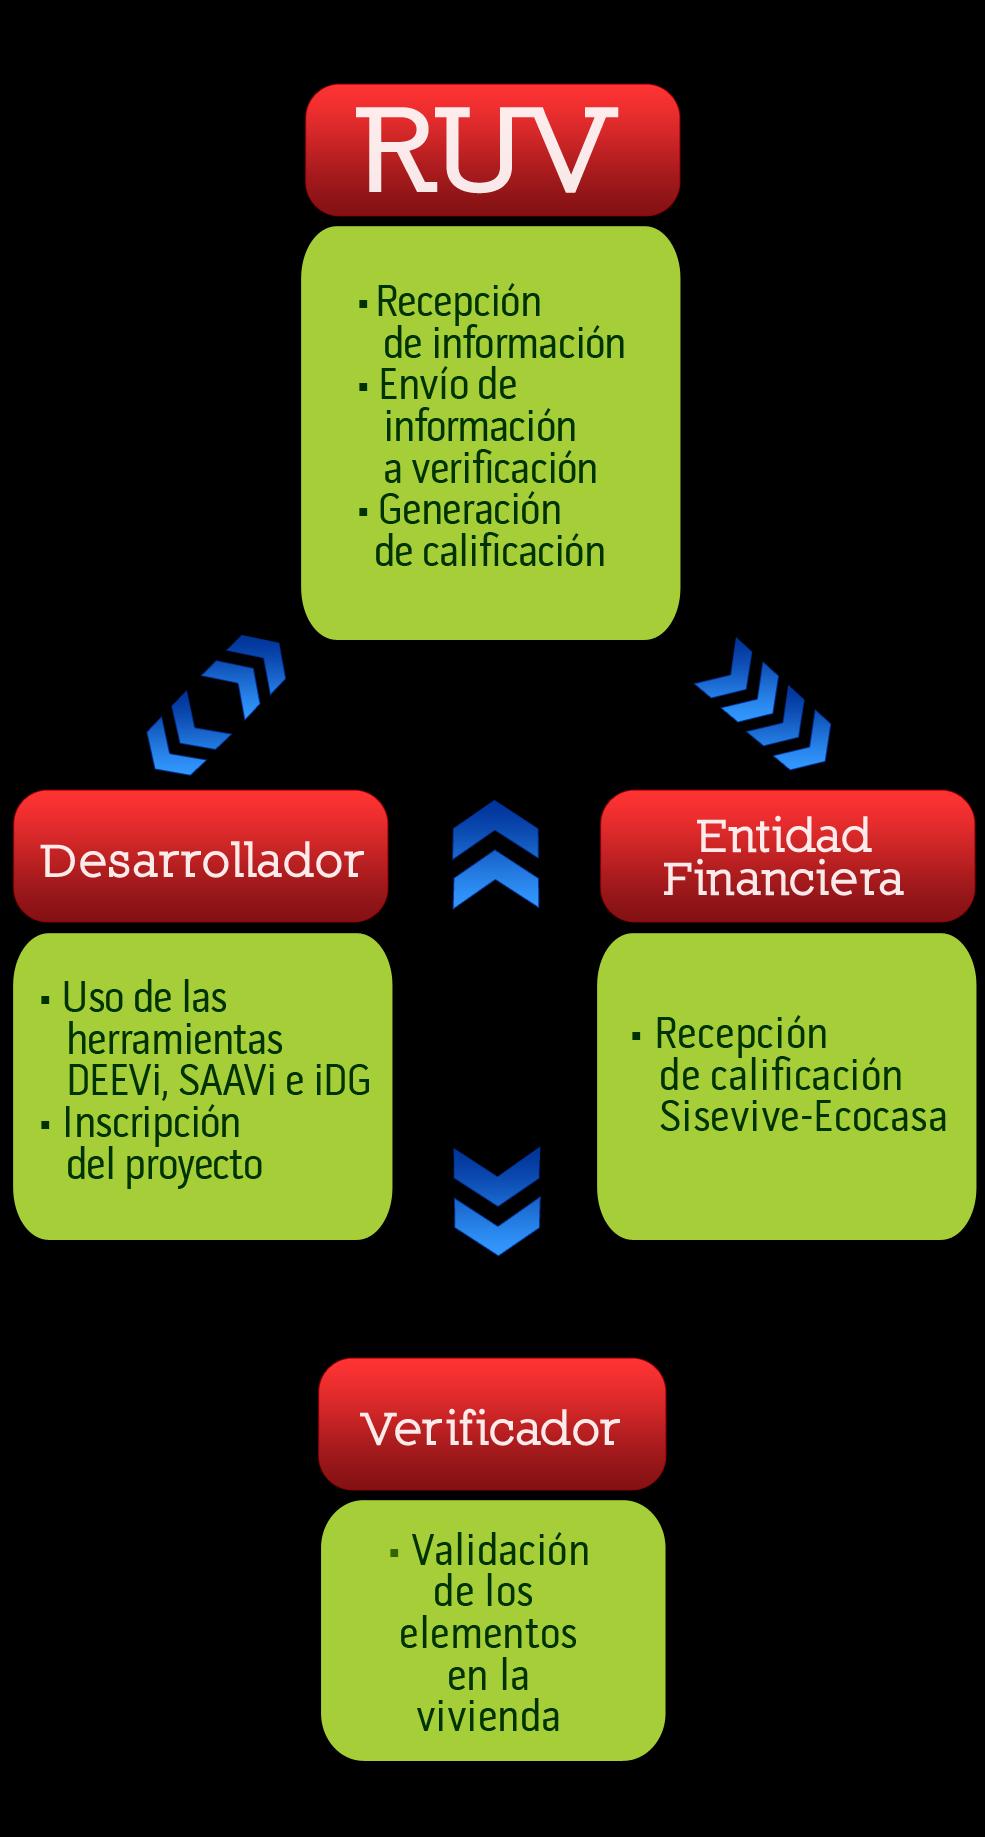 Operatividad del Sisevive-Ecocasa El Sisevive-Ecocasa está integrado en el actual proceso de registro y oferta de vivienda en RUV (Registro Único de Vivienda).